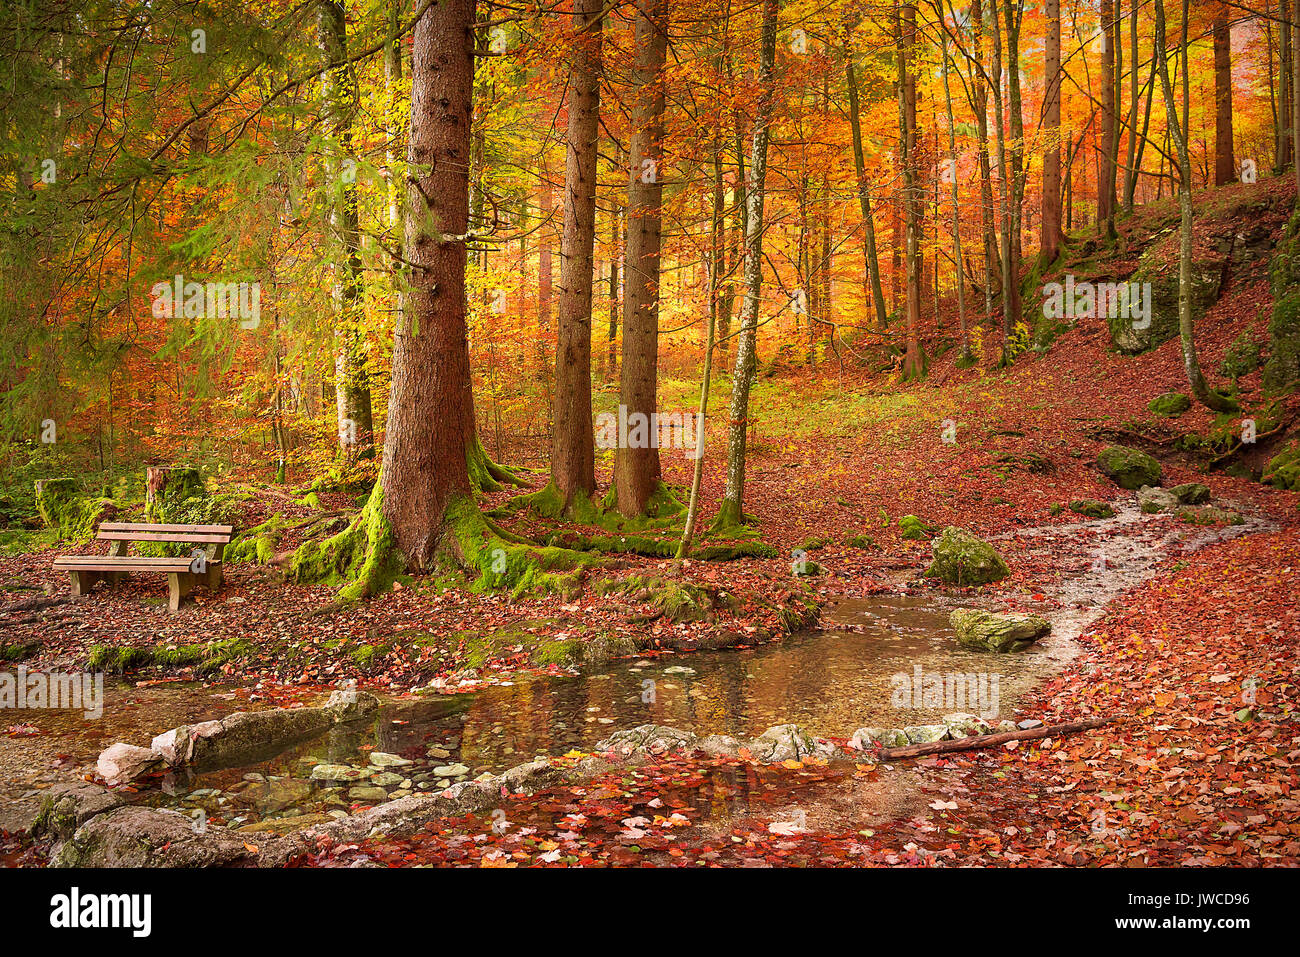 Beau paysage d'automne avec un banc en bois sur la rive, entouré de feuilles mortes et arbres colorés, sur une journée ensoleillée d'octobre. Banque D'Images